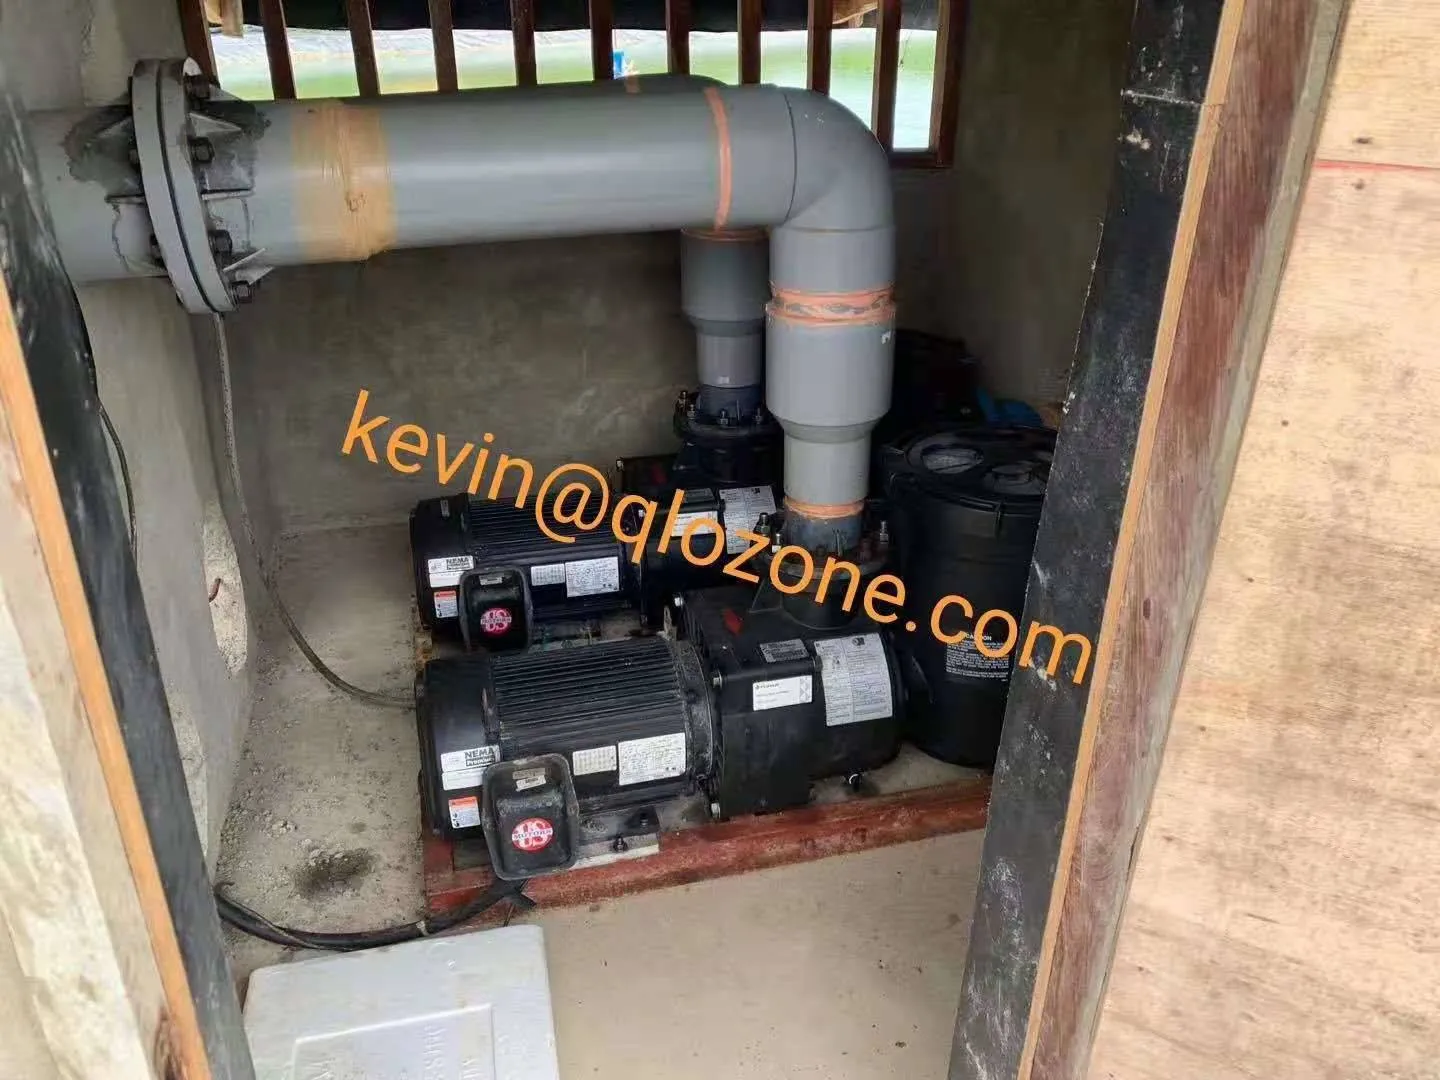 ozone generator pump for aquaculture